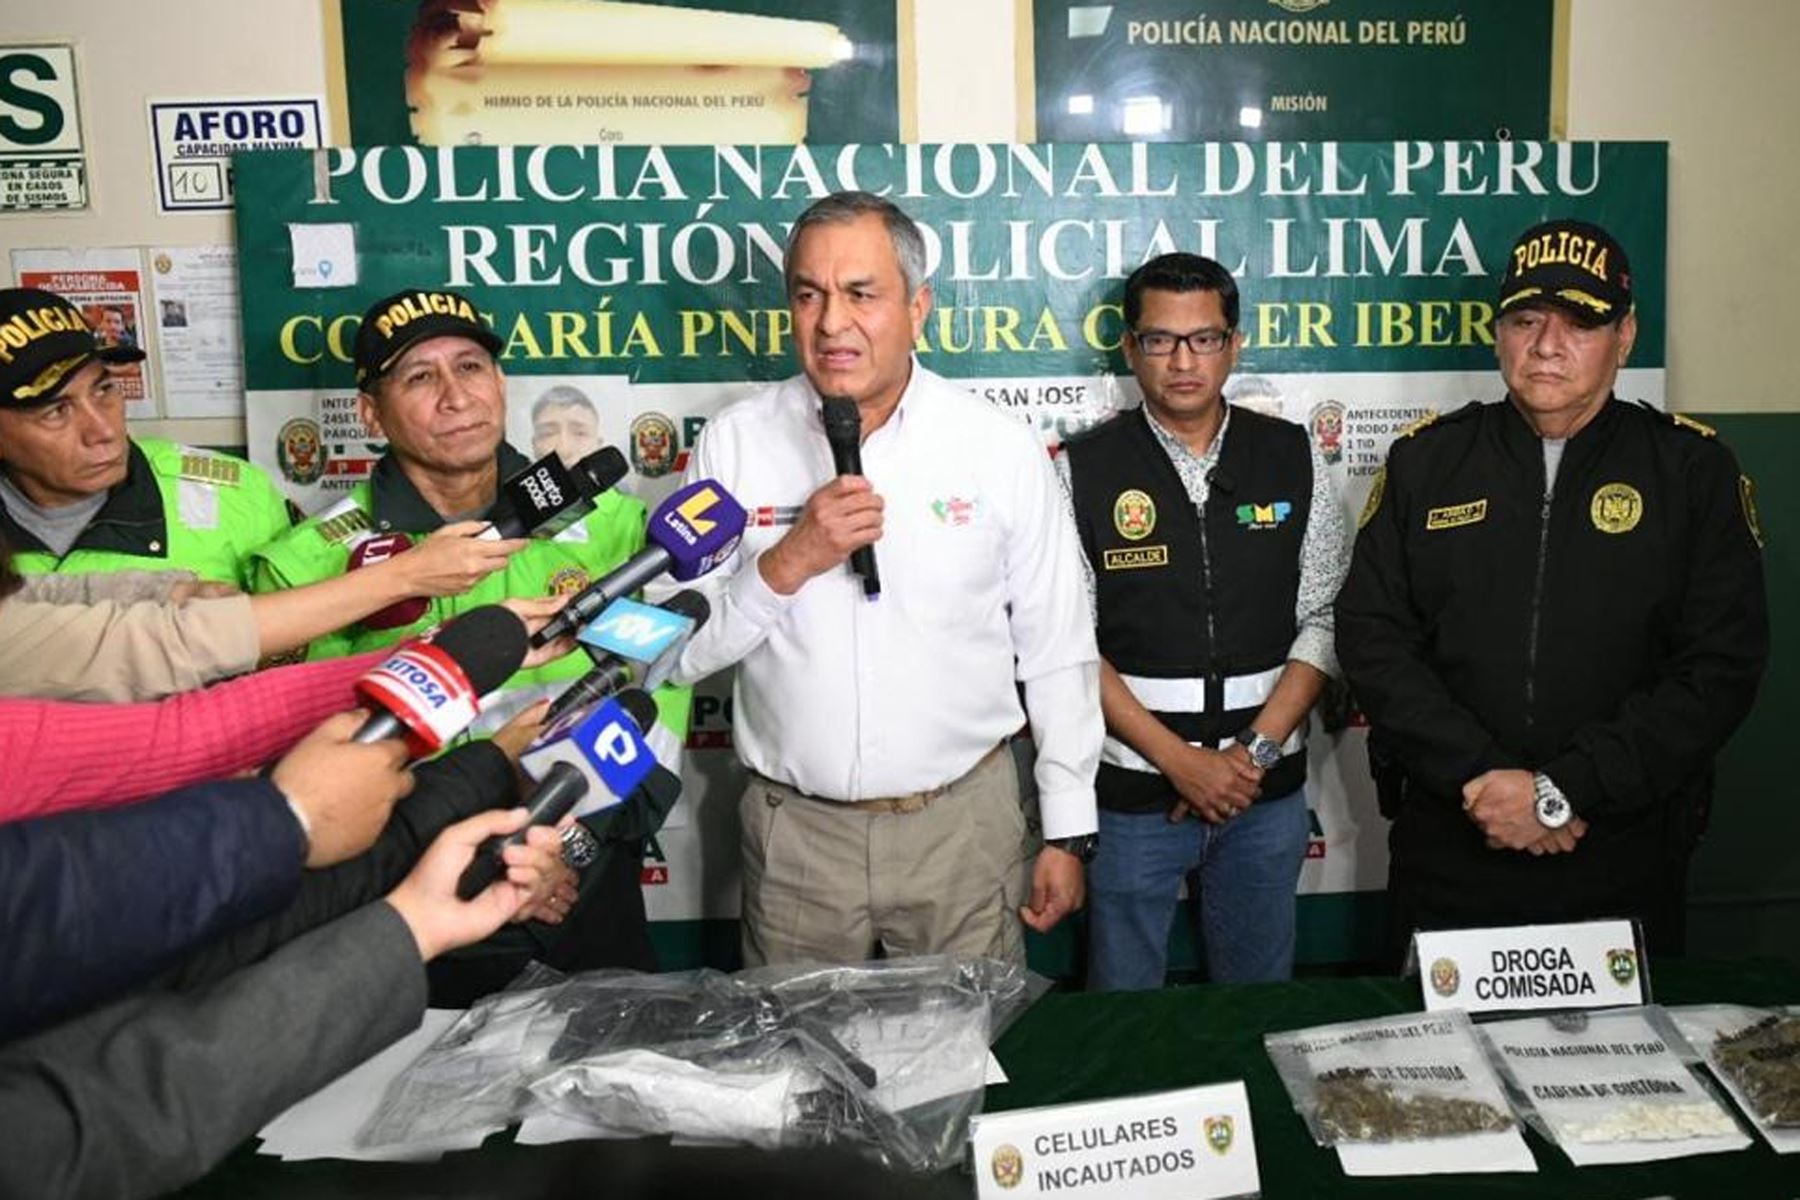 El ministro del Interior, Vicente Romero inspecciona el trabajo policial en la comisaría Laura Caller, en el límite entre San Martín de Porres y Los Olivos, como parte de las acciones ejecutadas por la Policía Nacional del Perú, para combatir la criminalidad, en el marco del estado de emergencia.
Foto: Mininter